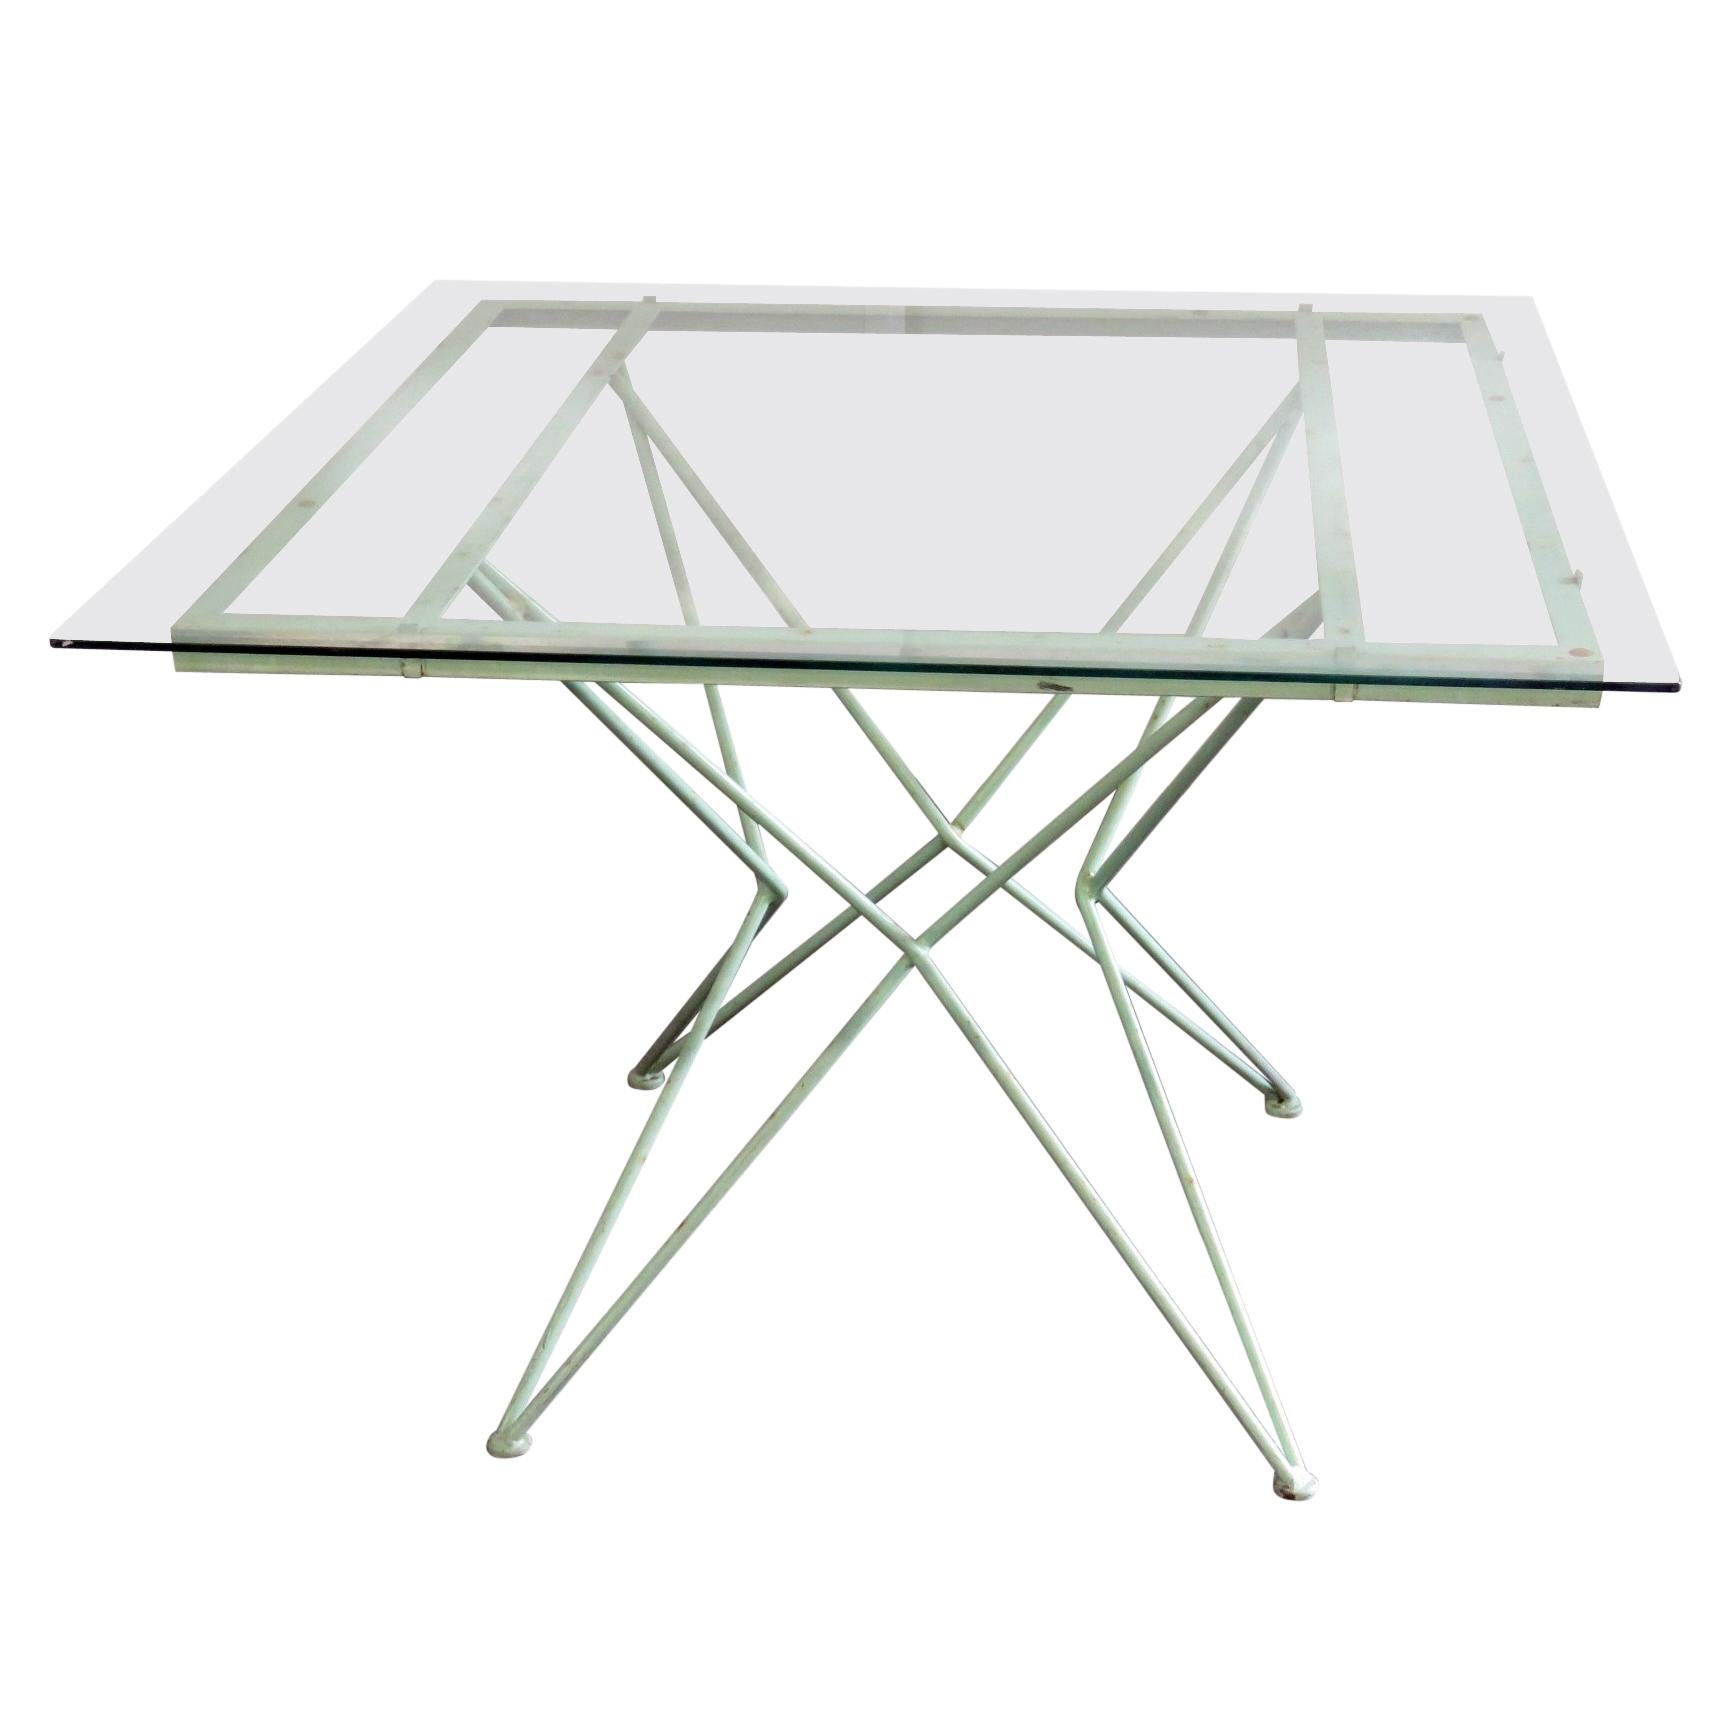 Italian Mid Century Modern Atomic Design Green Paint Patio Table